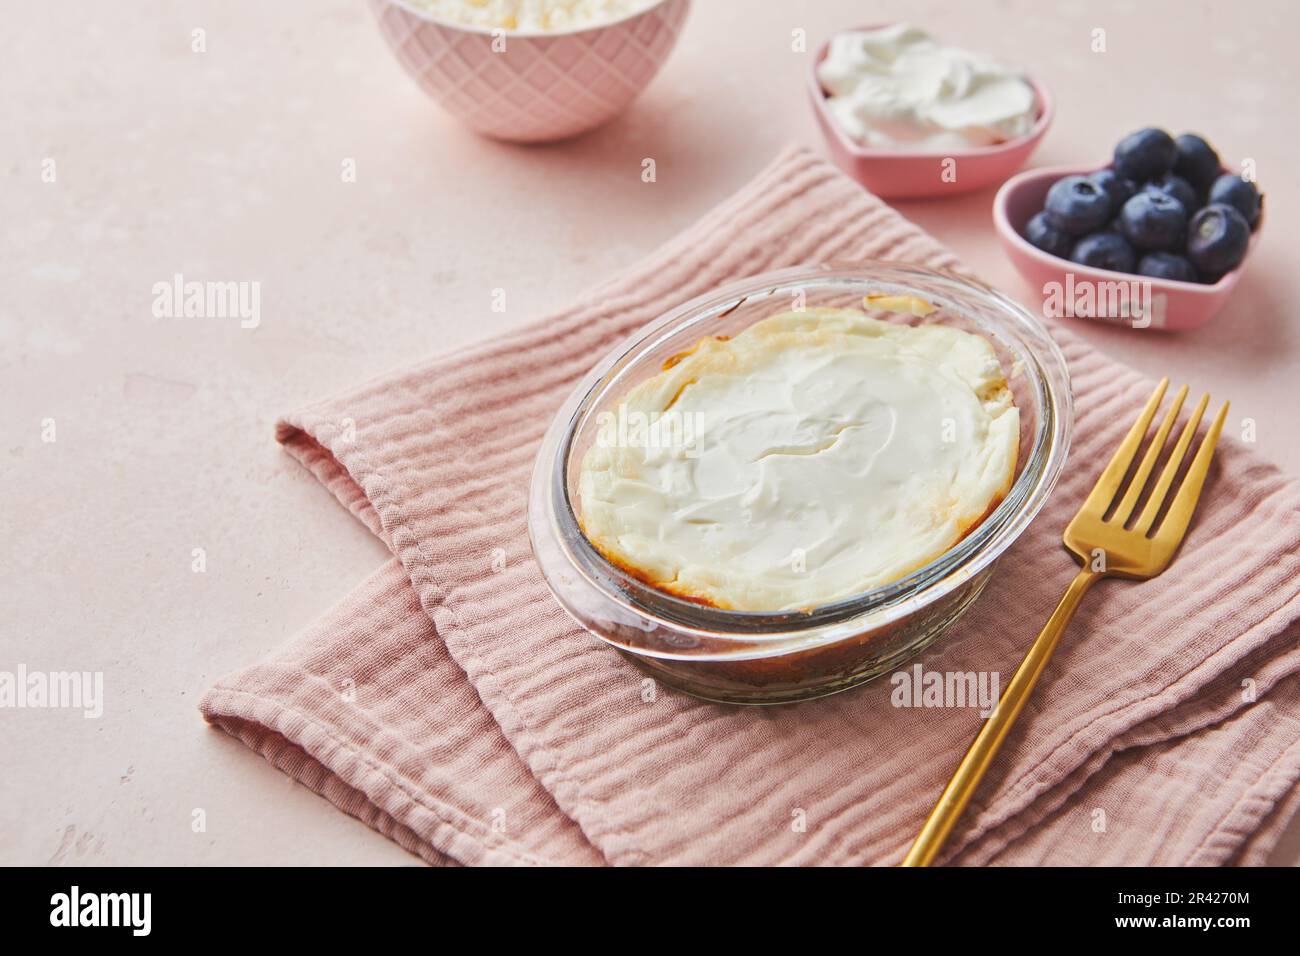 Deliziosa casseruola di formaggio casolare in vetro porzionato con panna acida. Cucina tradizionale russa per colazione - Zapekan Foto Stock